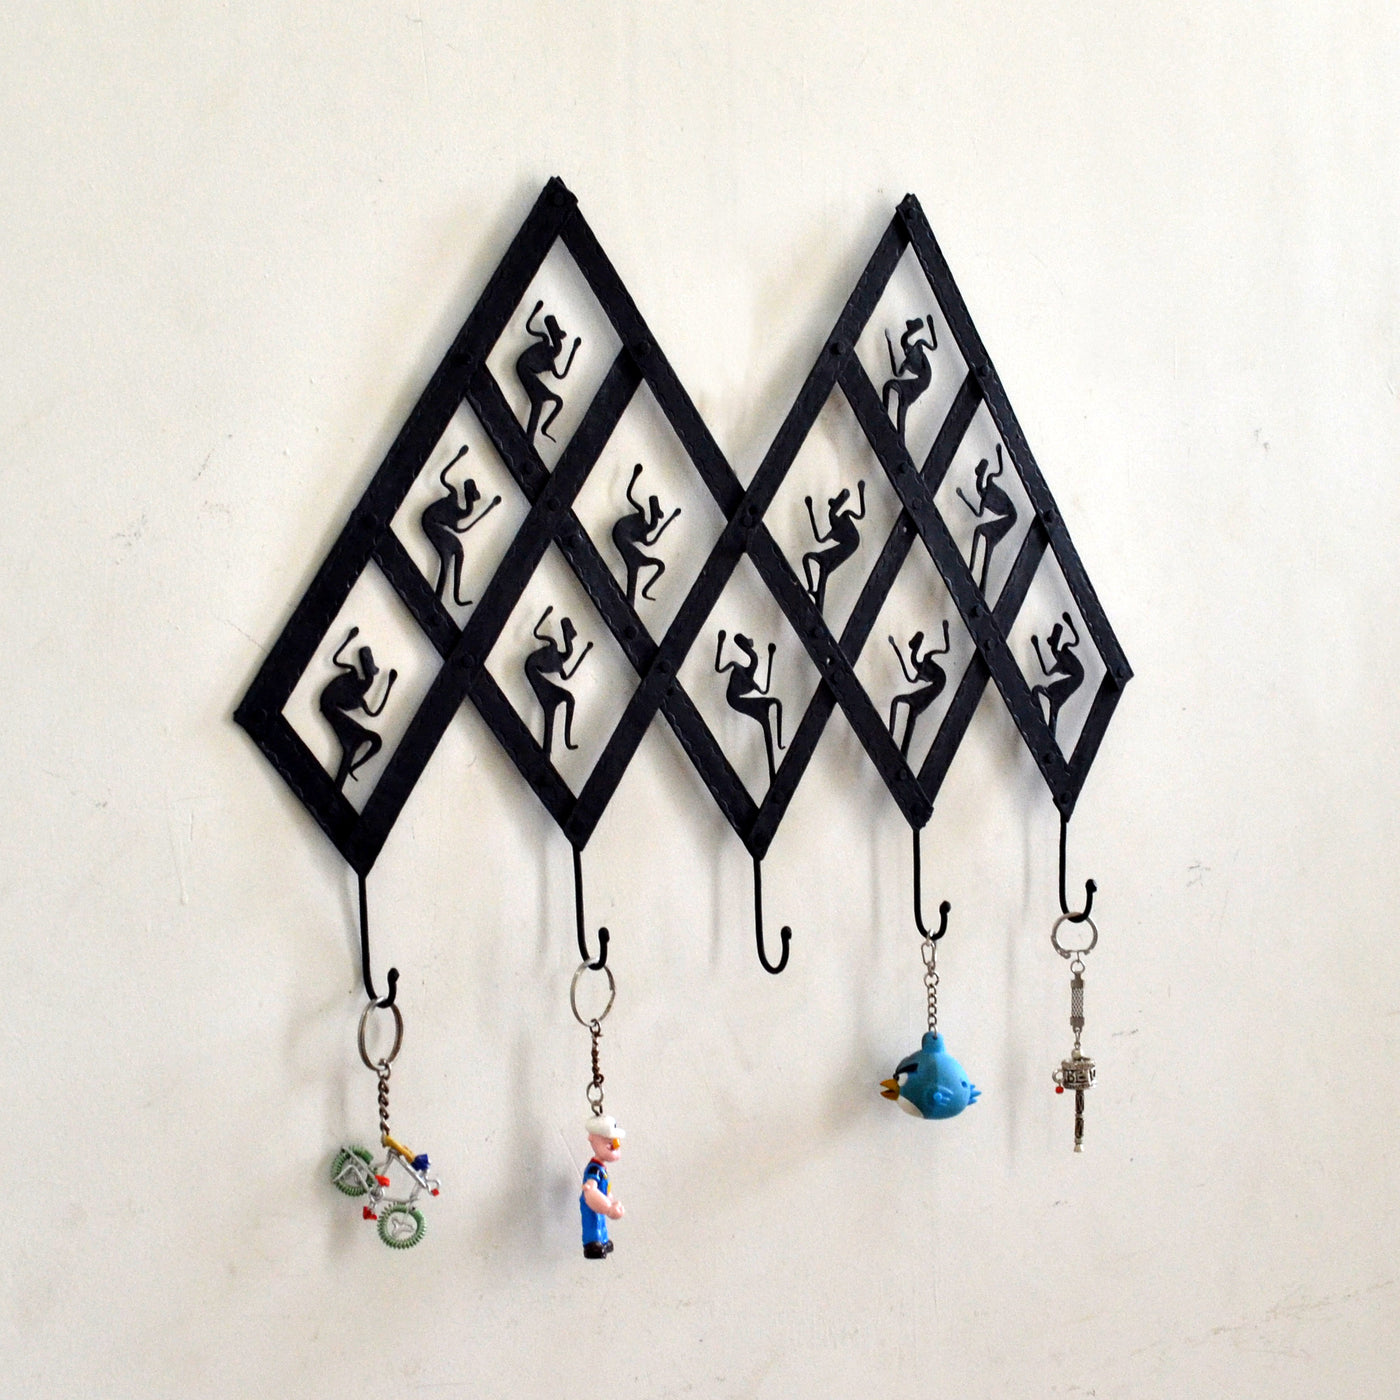 Chinhhari arts Wrought Iron  Abstract Tribal 5 Hook Keychain Holder - Chinhhari Arts store